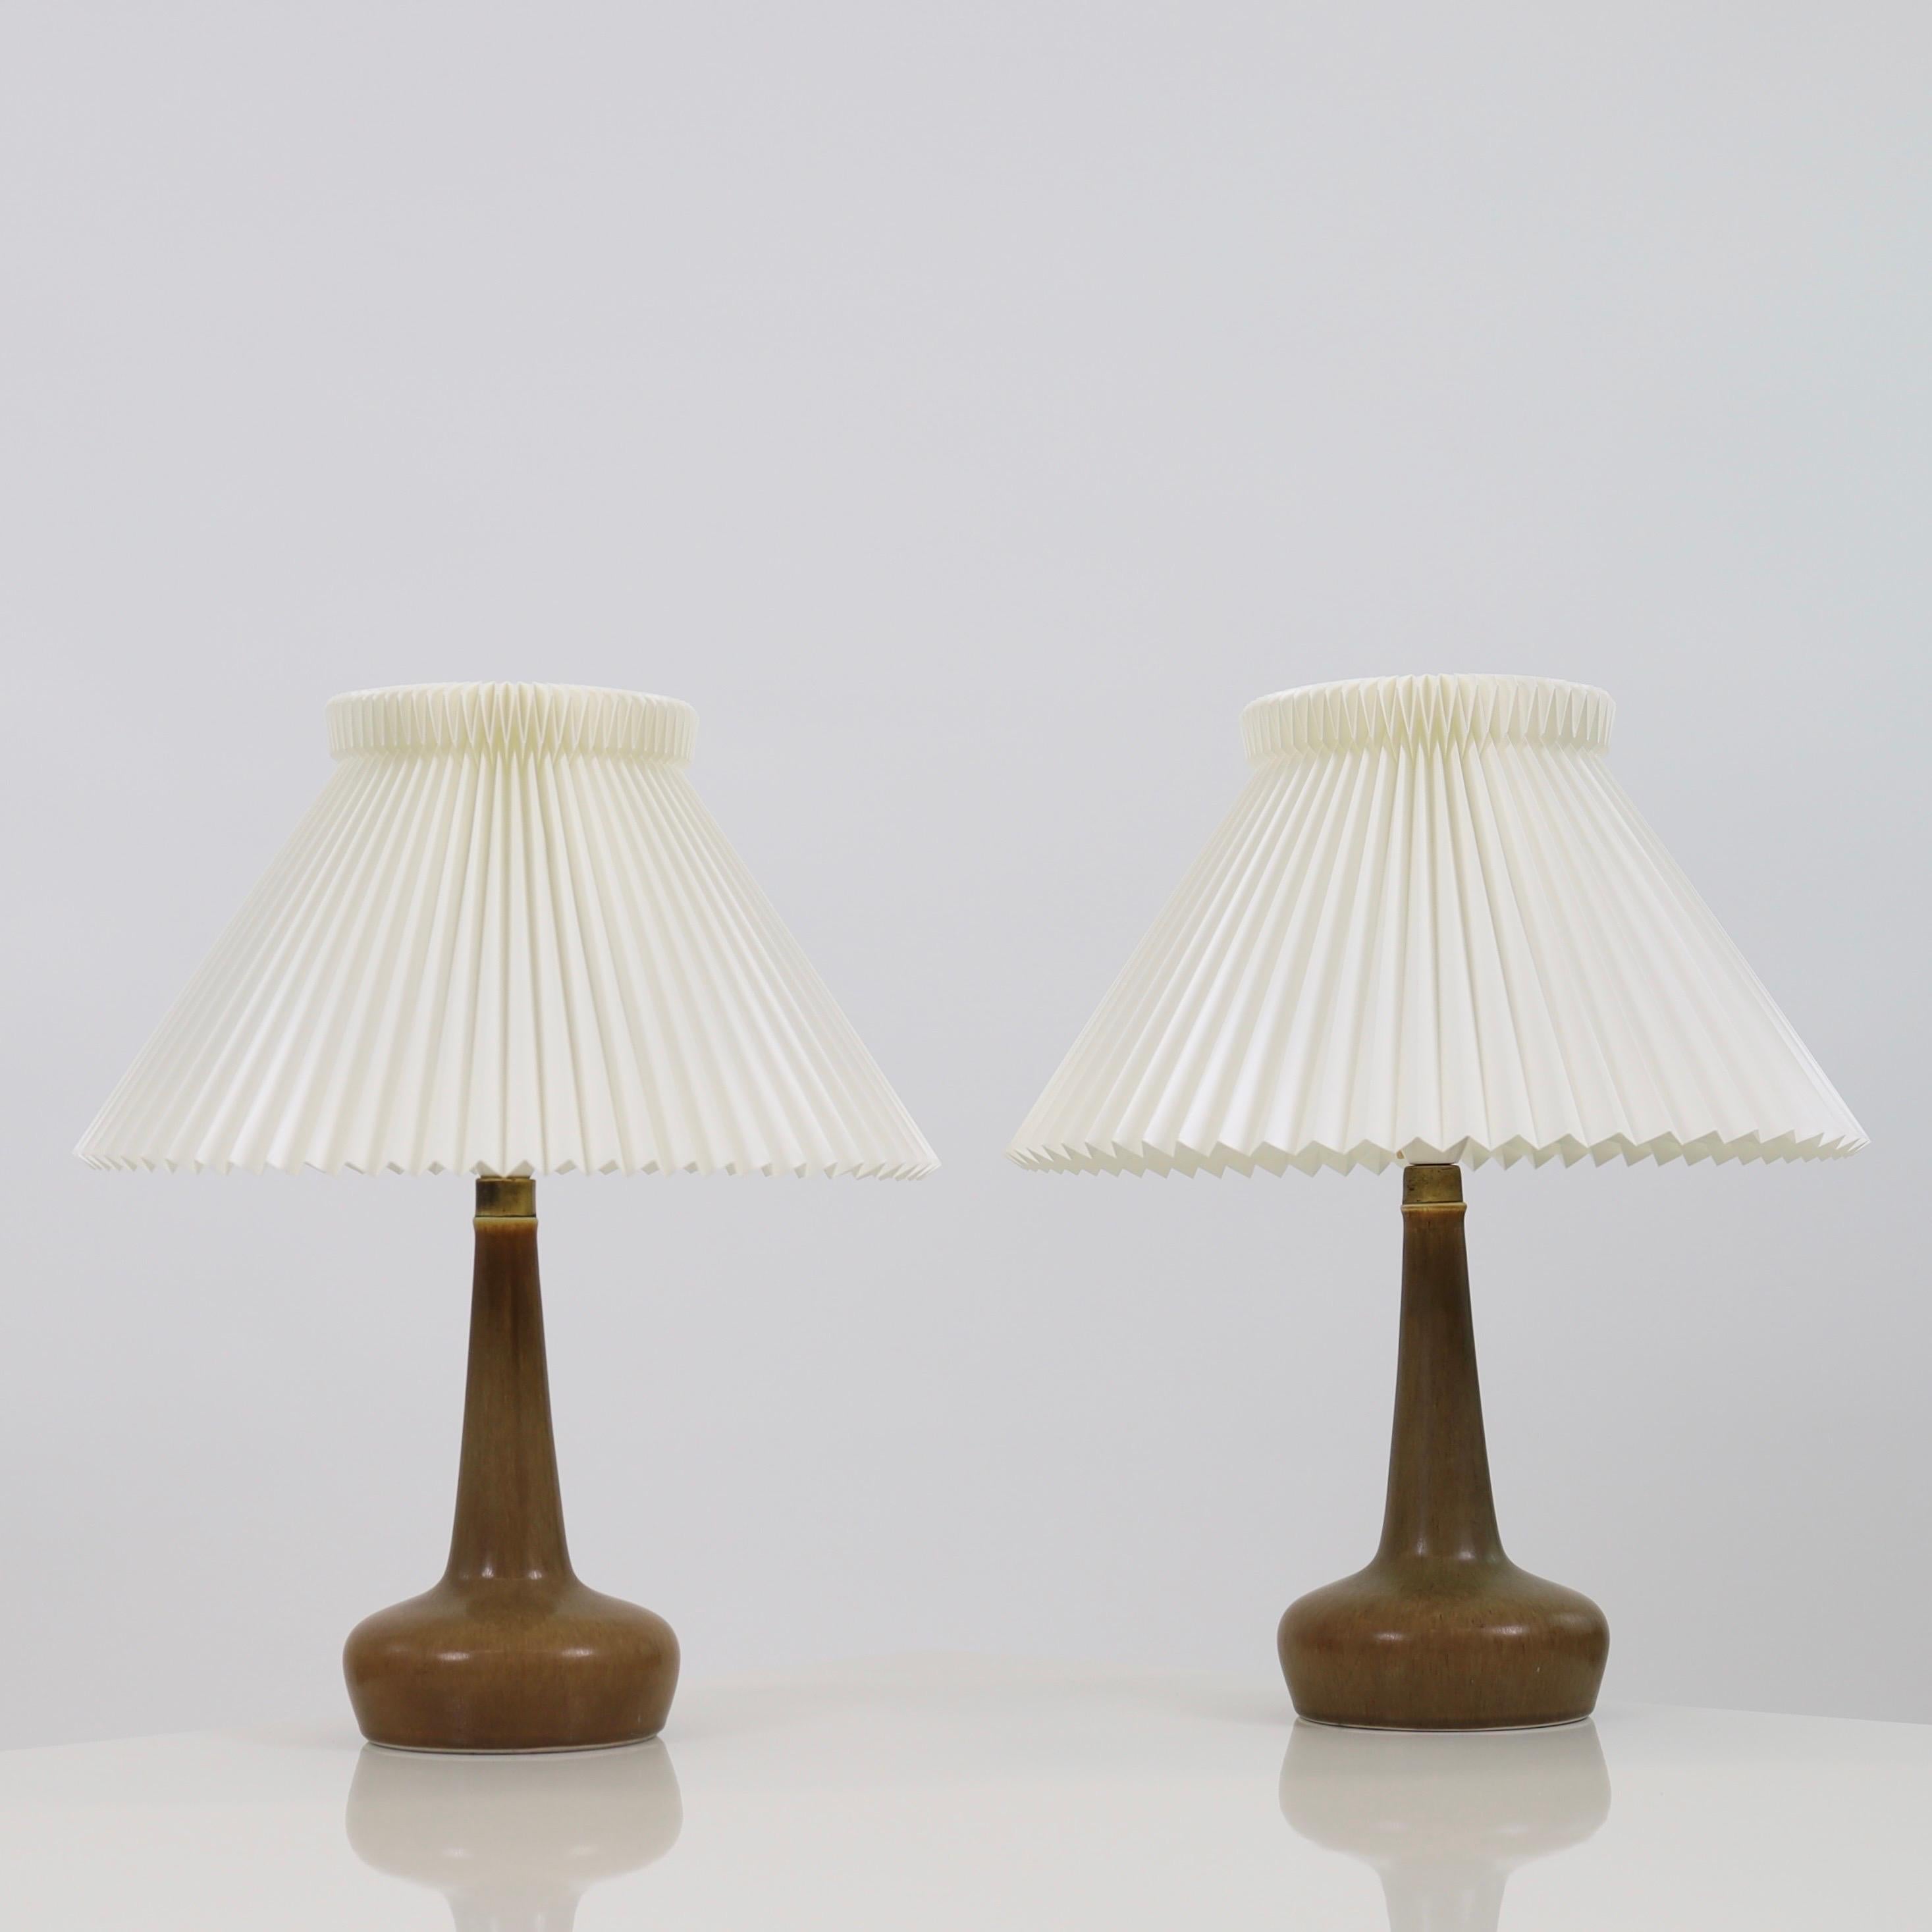 Paire de lampes de bureau en céramique conçues par Esben Klint pour Le Klint en 1949 et produites par Palshus dans les années 1950.

* Un ensemble de deux (2) lampes de bureau en céramique brune avec des abat-jours plissés à la main
* Designer :